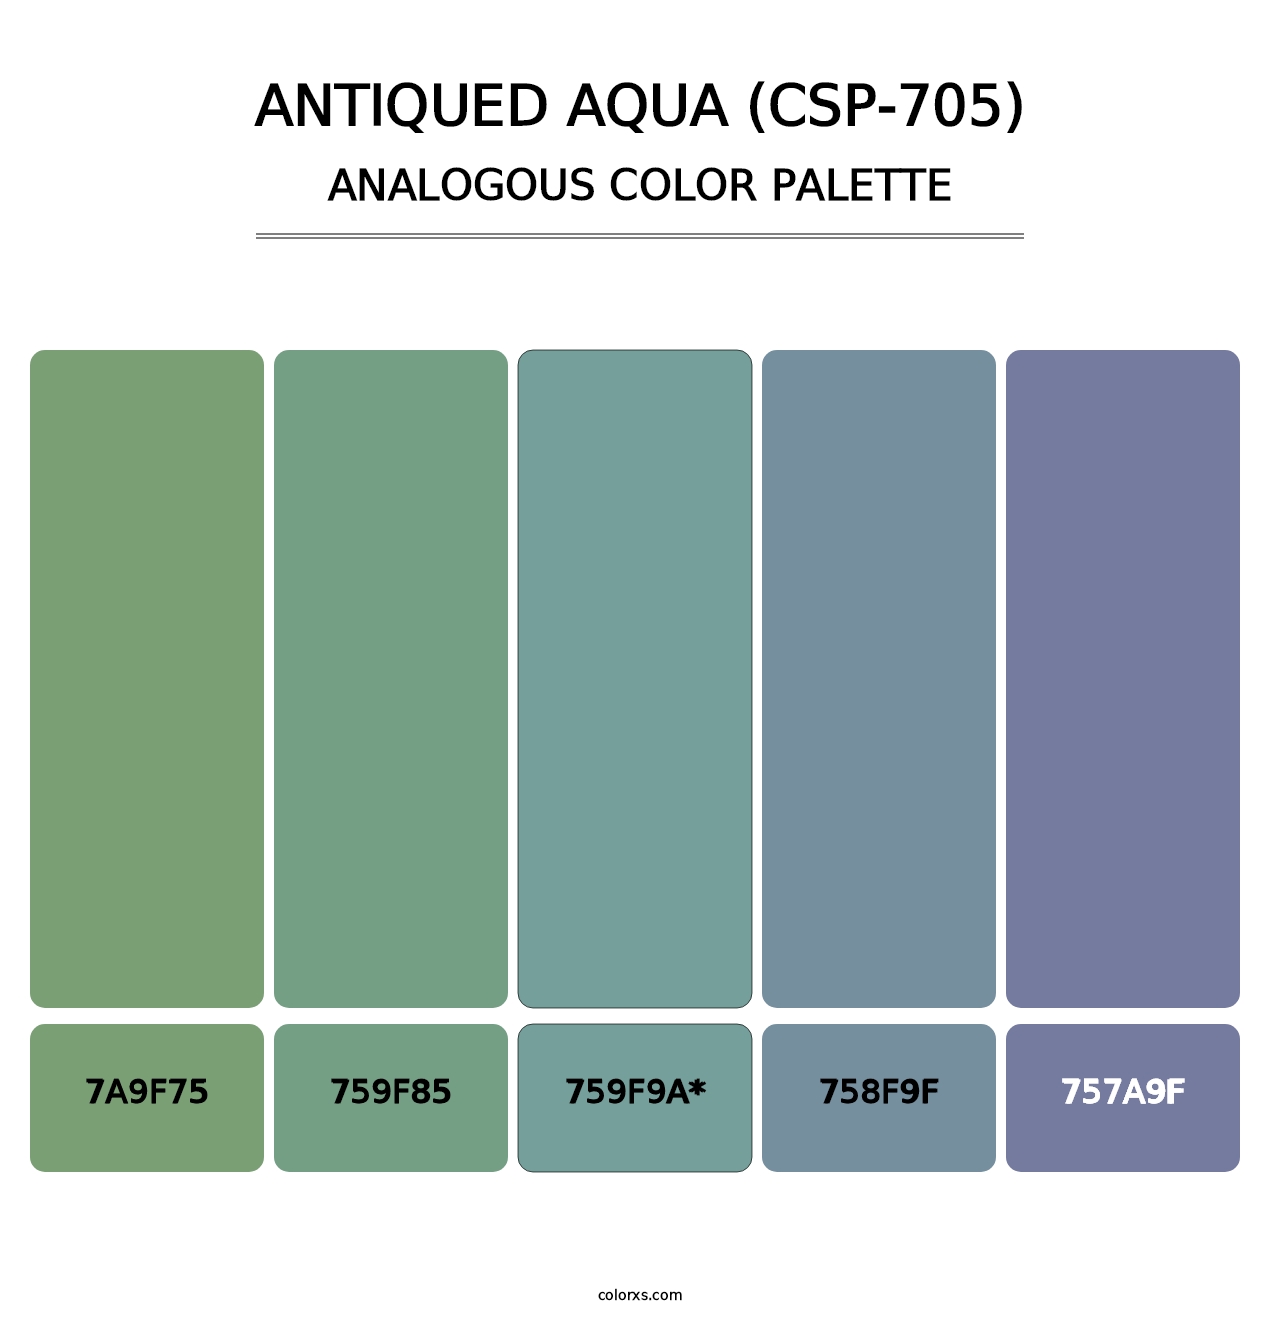 Antiqued Aqua (CSP-705) - Analogous Color Palette